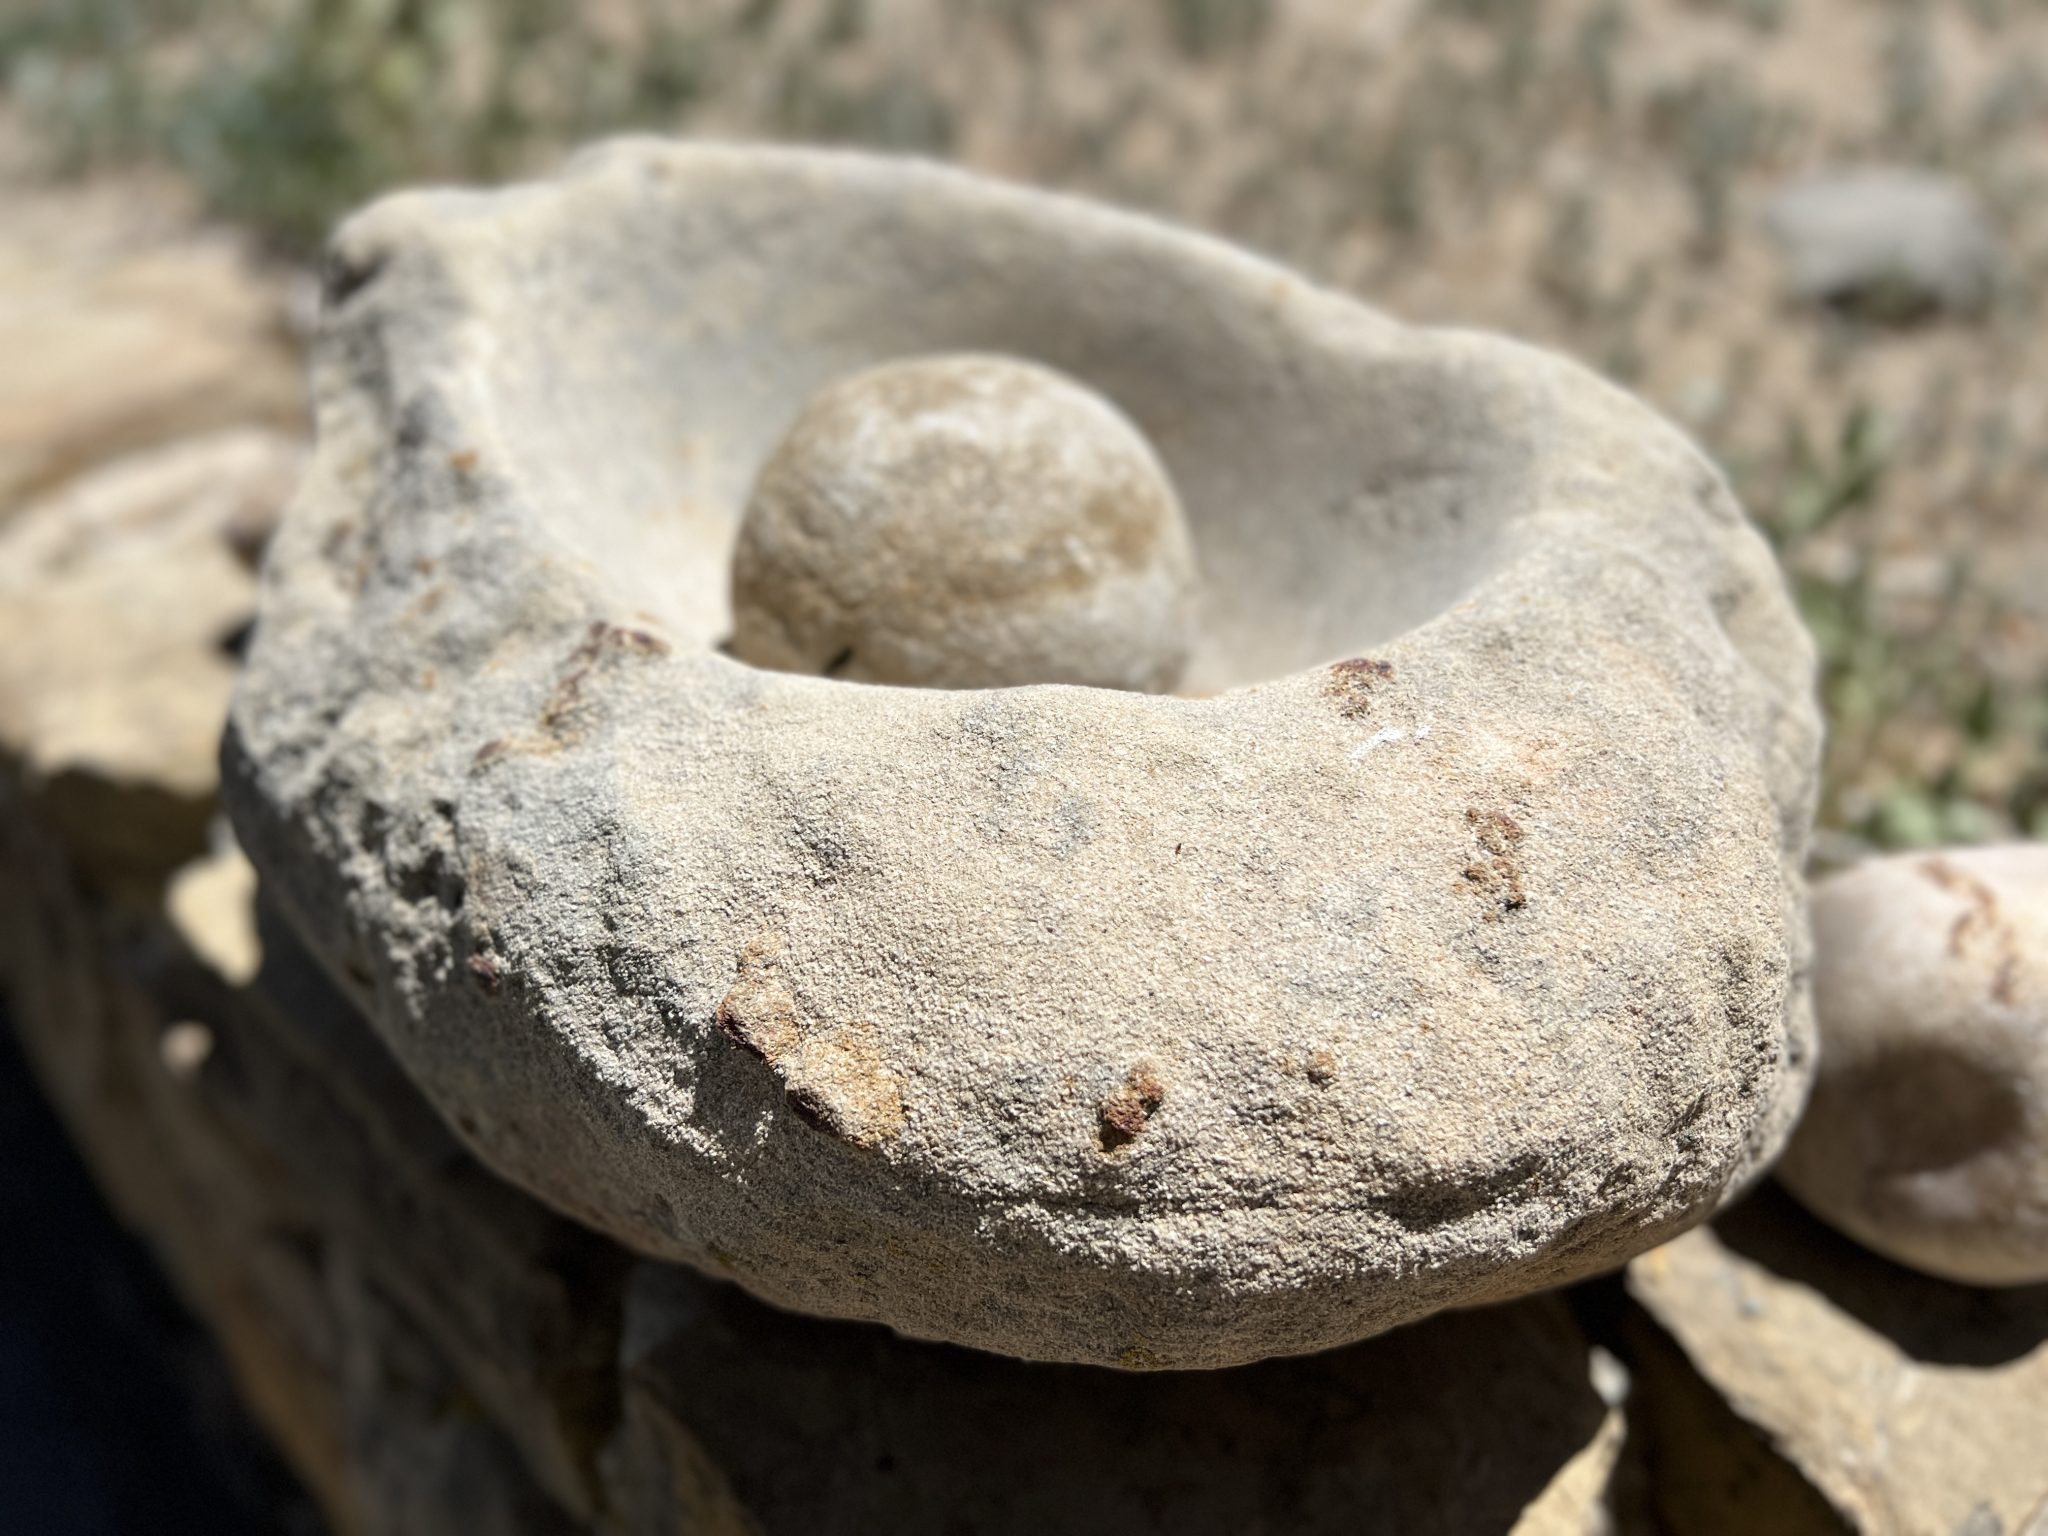 Ancient puebloan griding rock and pestle